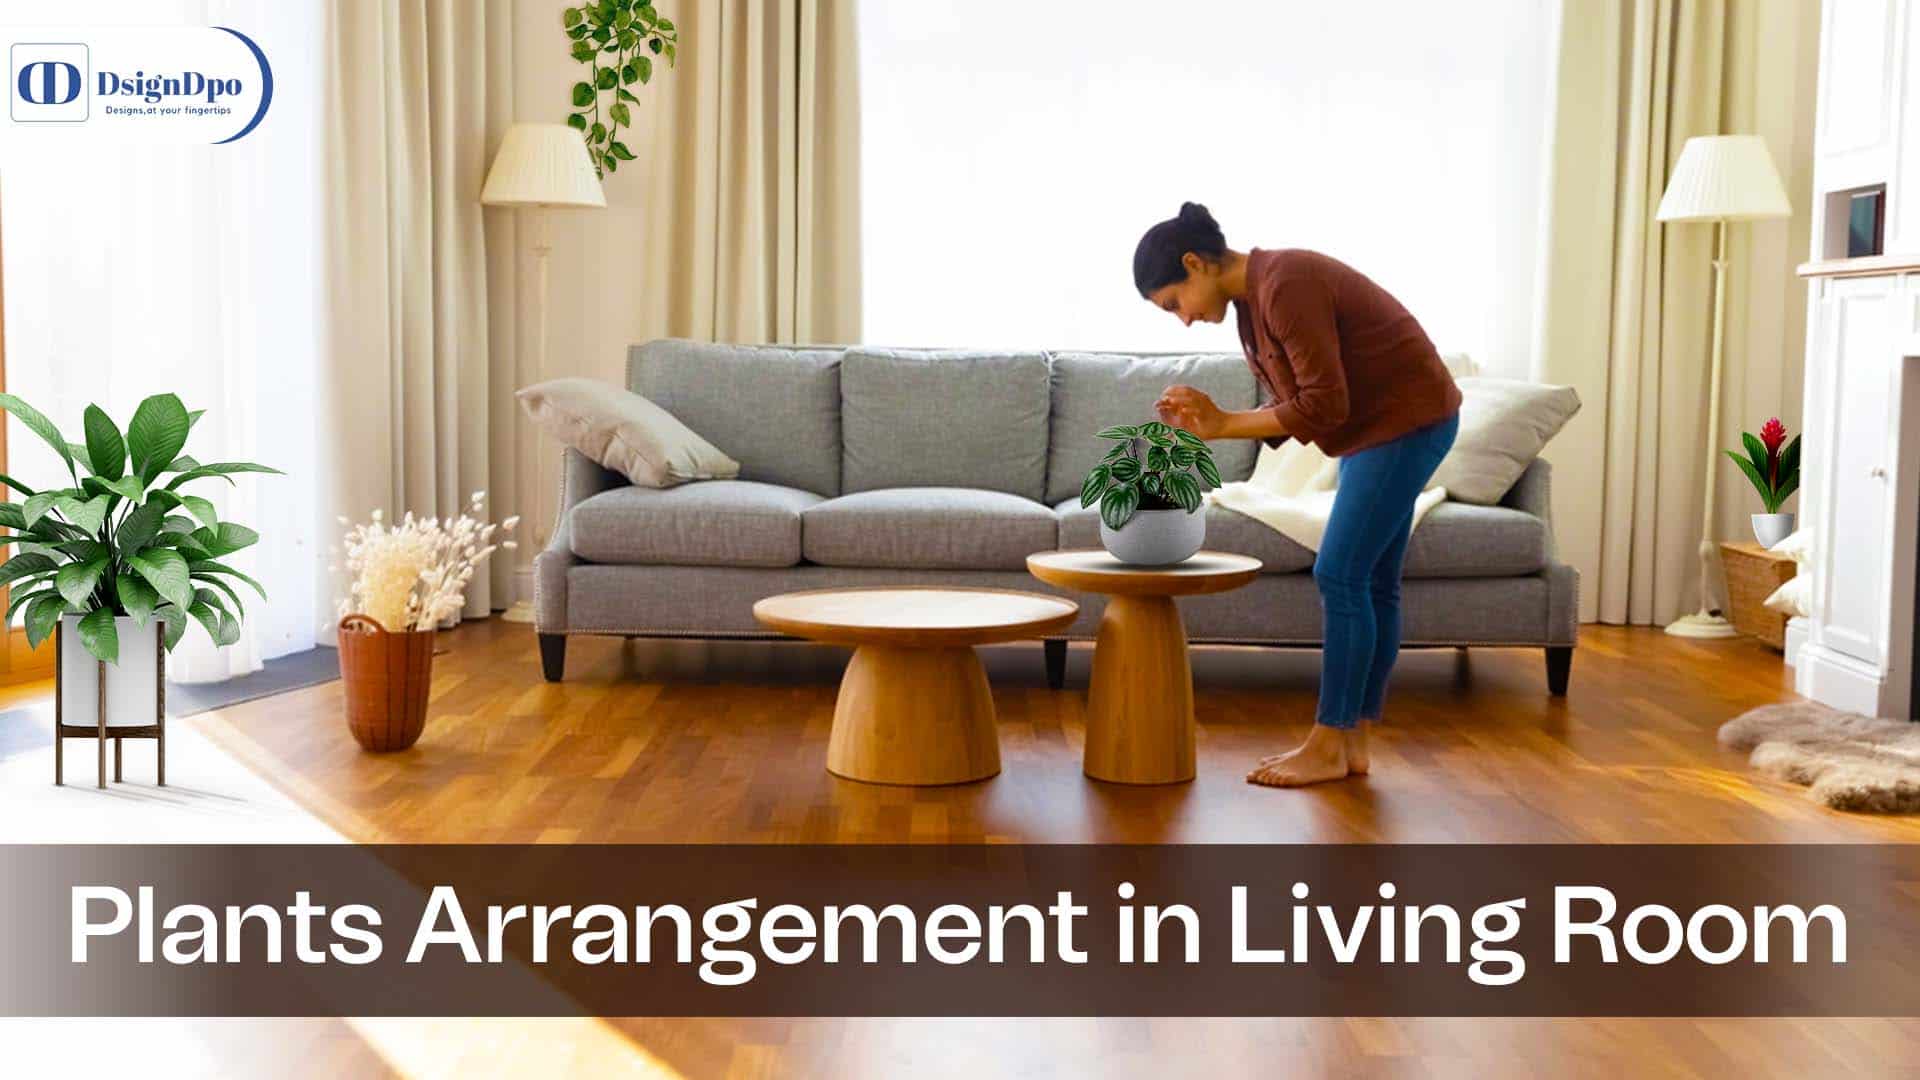 Plants Arrange In Living Room